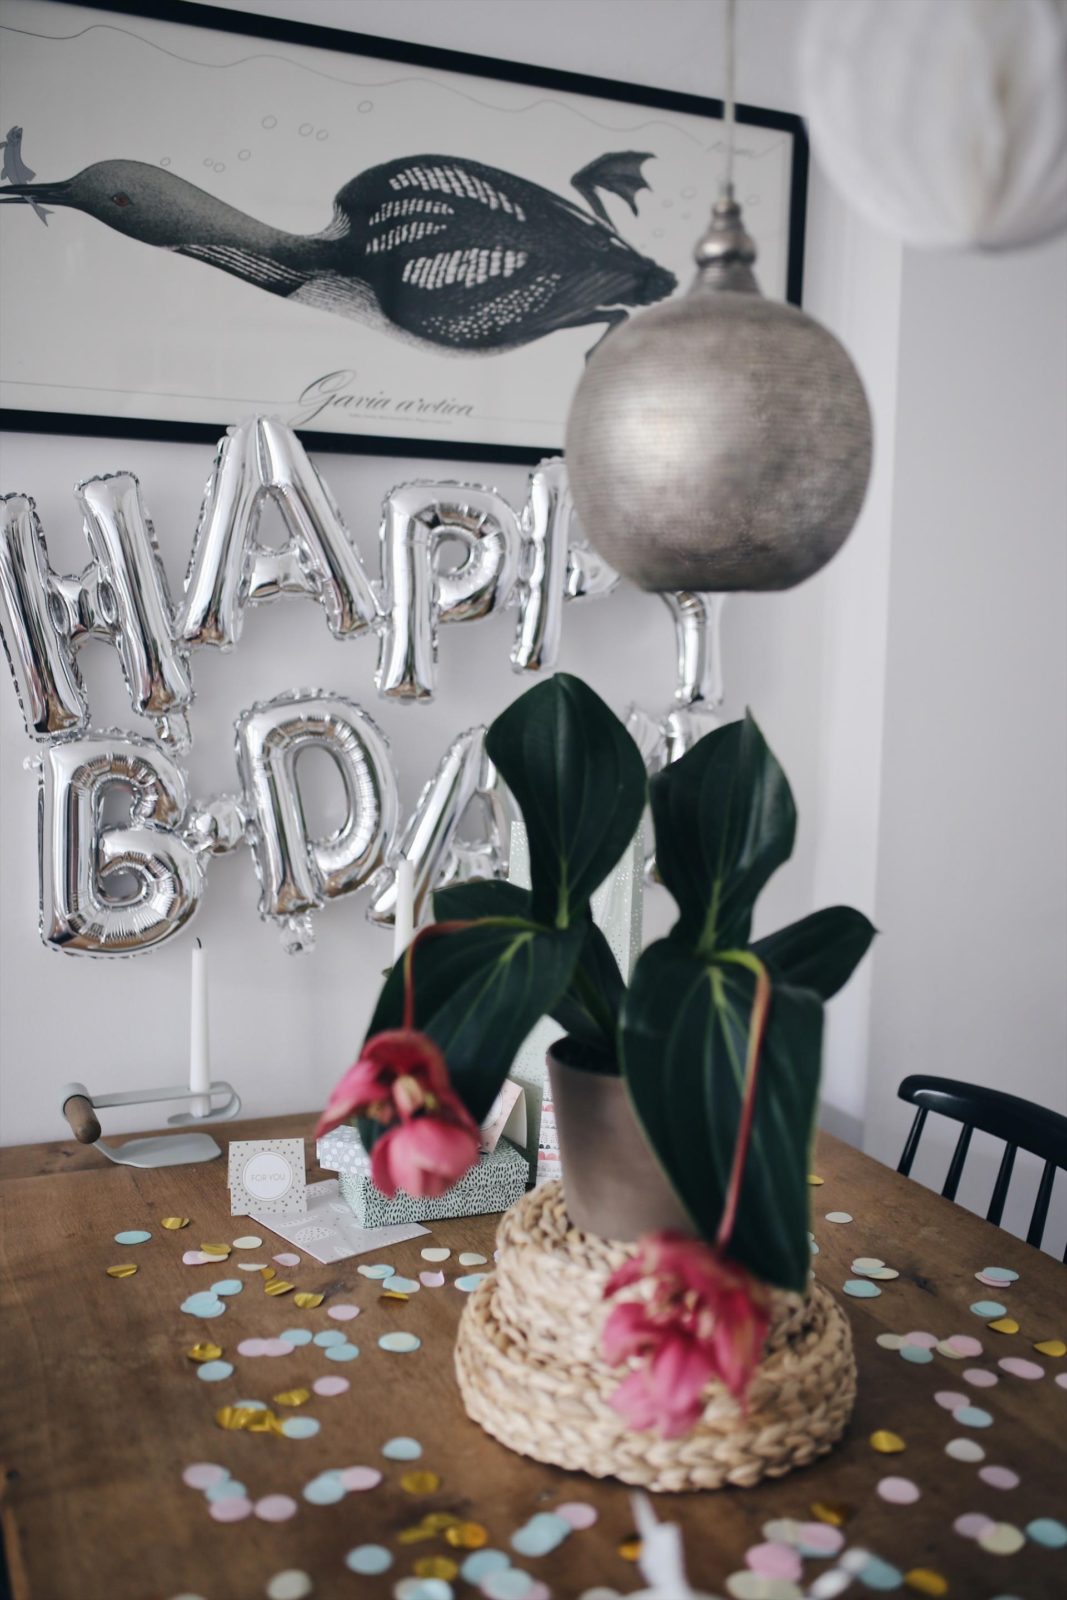 Tipps für einen entspannten Geburtstag mit russischen Zupfkuchen Rezept | #Geburtstagstipps #backende #Geburtstag #Kuchenrezept #russischerzupfkuchen #Geburtstagsideen | Pinspiration.de